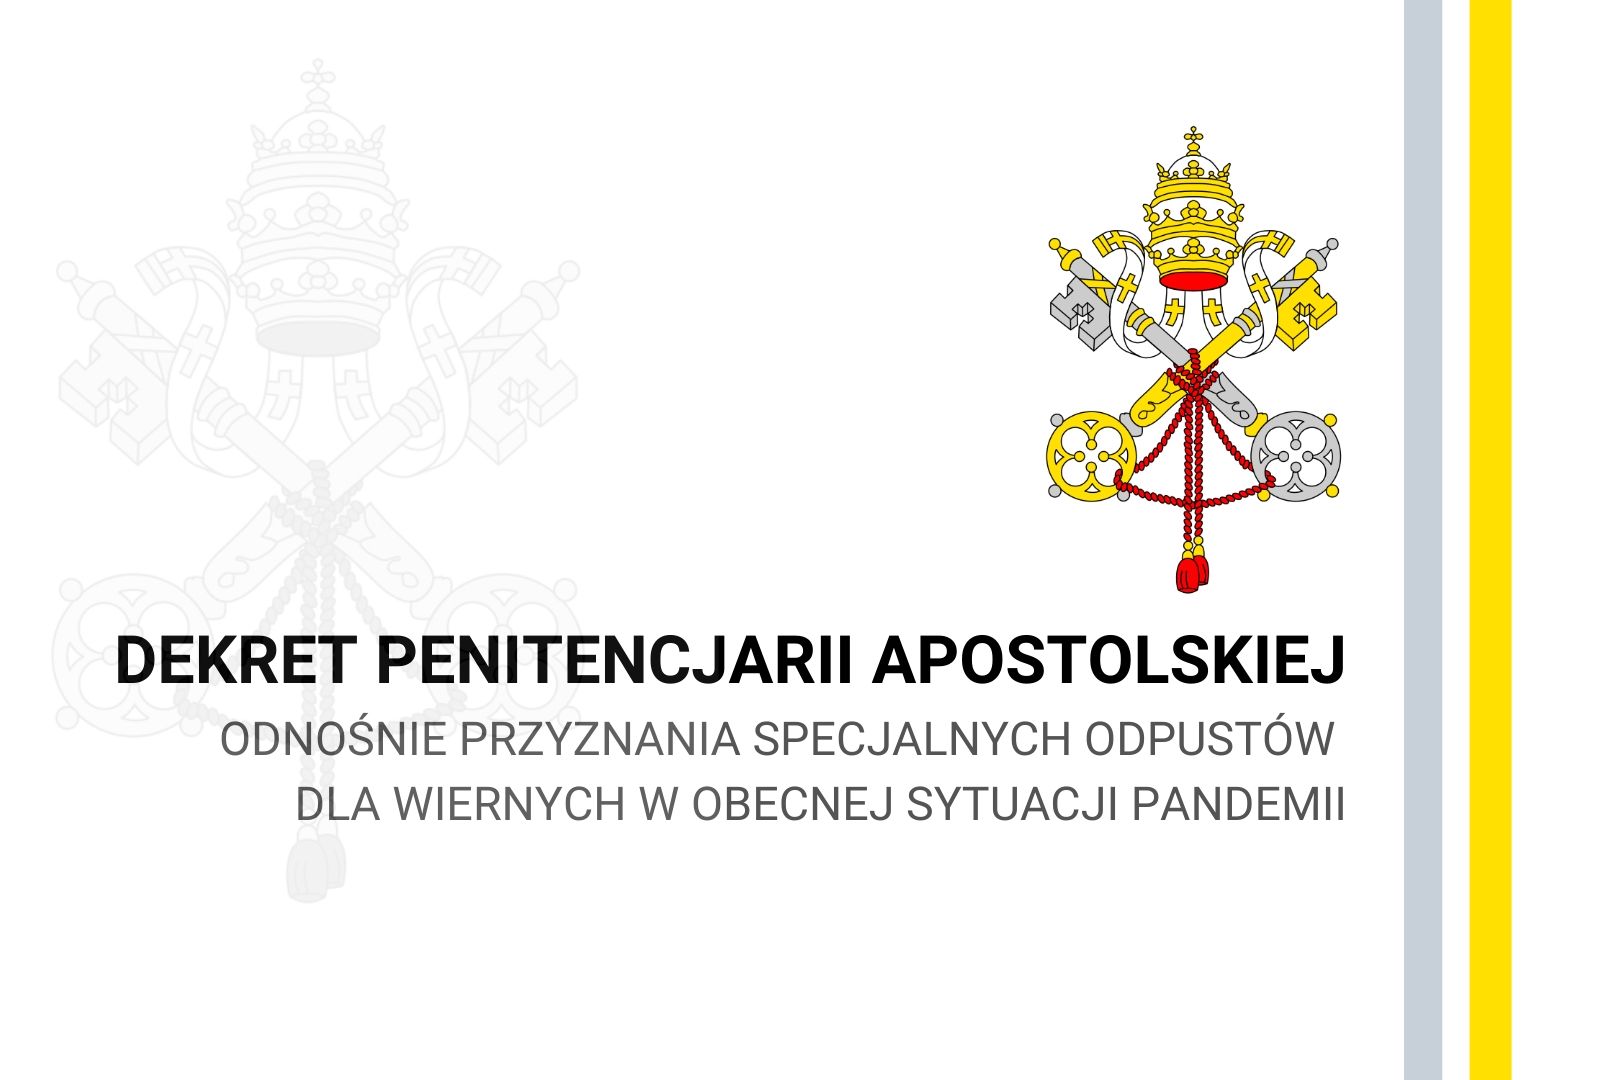 Dekret Penitencjarii Apostolskiej w związku z koronawirusem